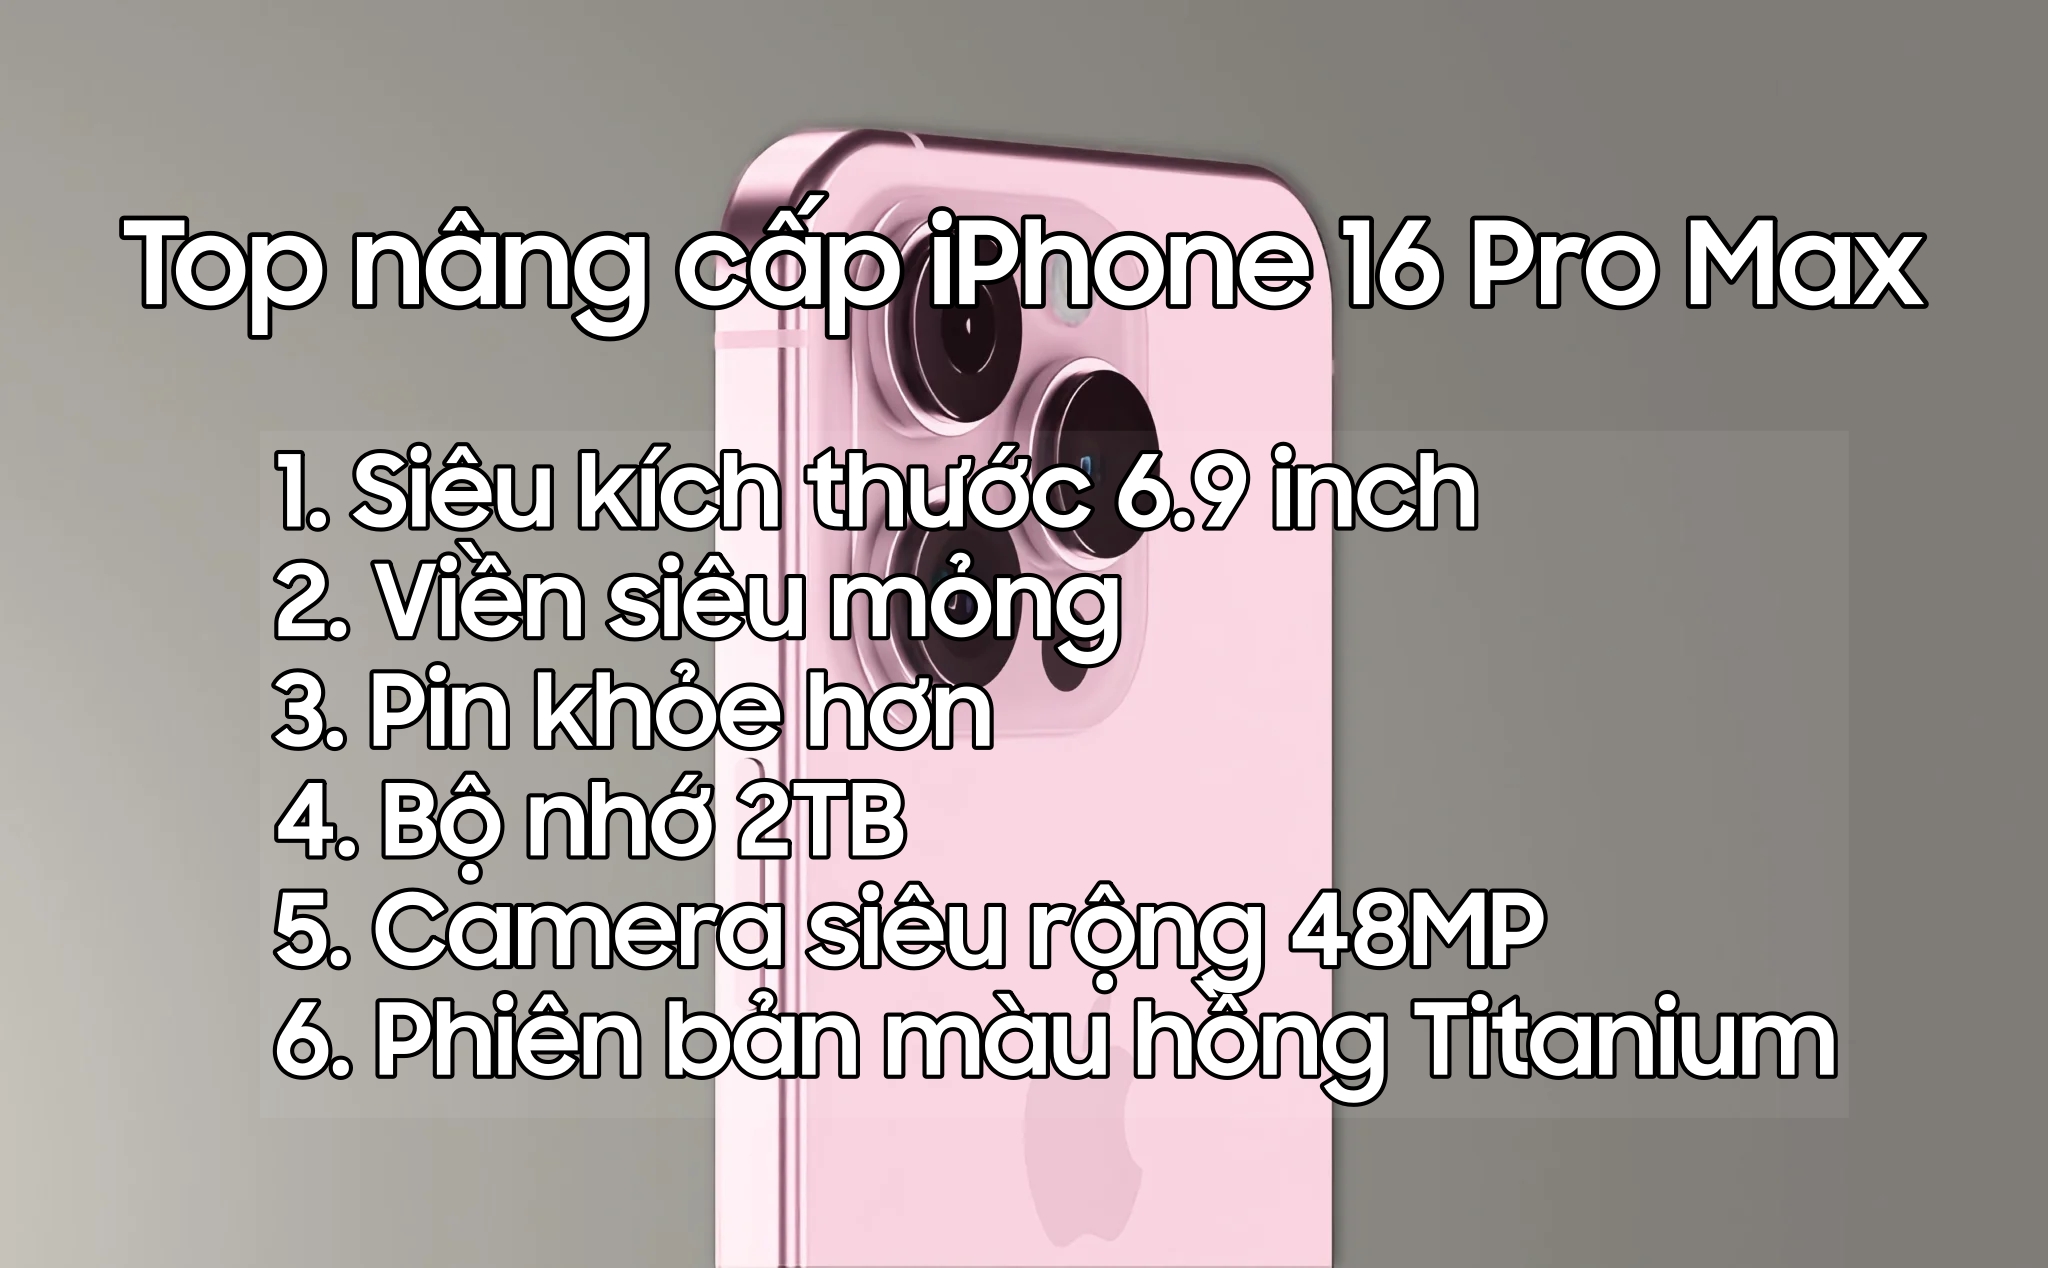 iPhone 16 Pro Max: Bom tấn nổ chậm đáng chờ đợi nhất trong năm nay!